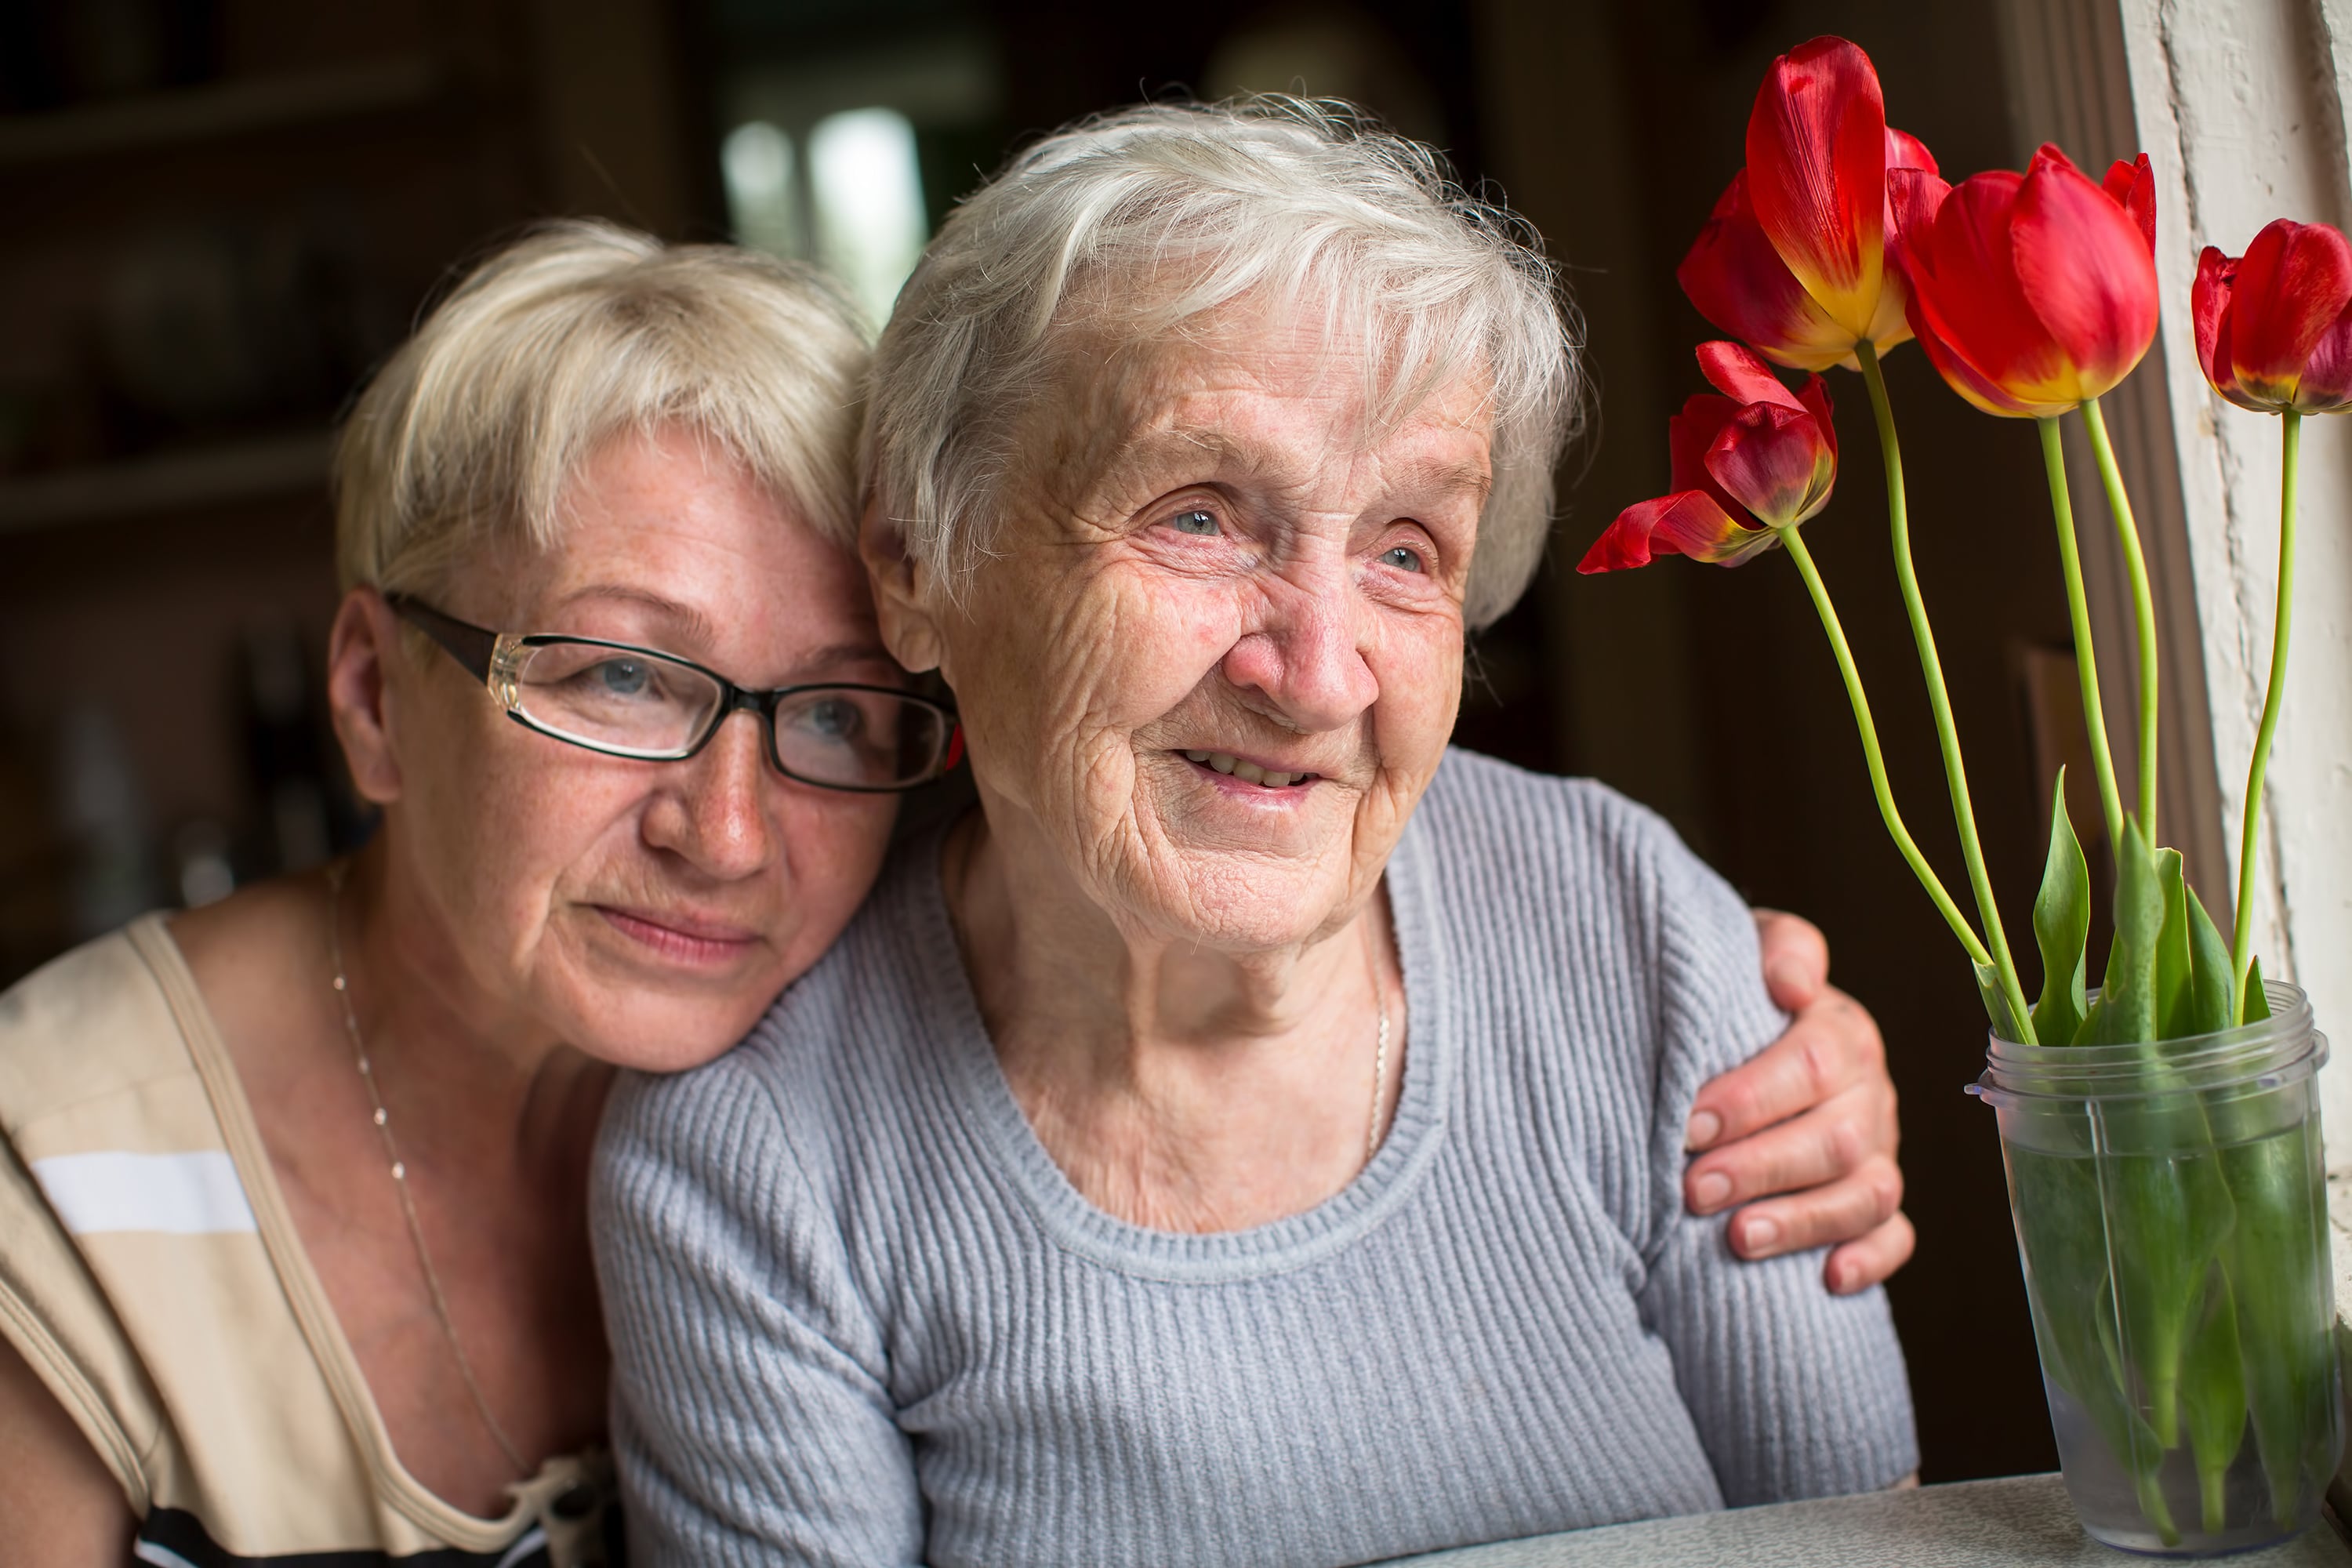 A caregiver embracing her older loved one